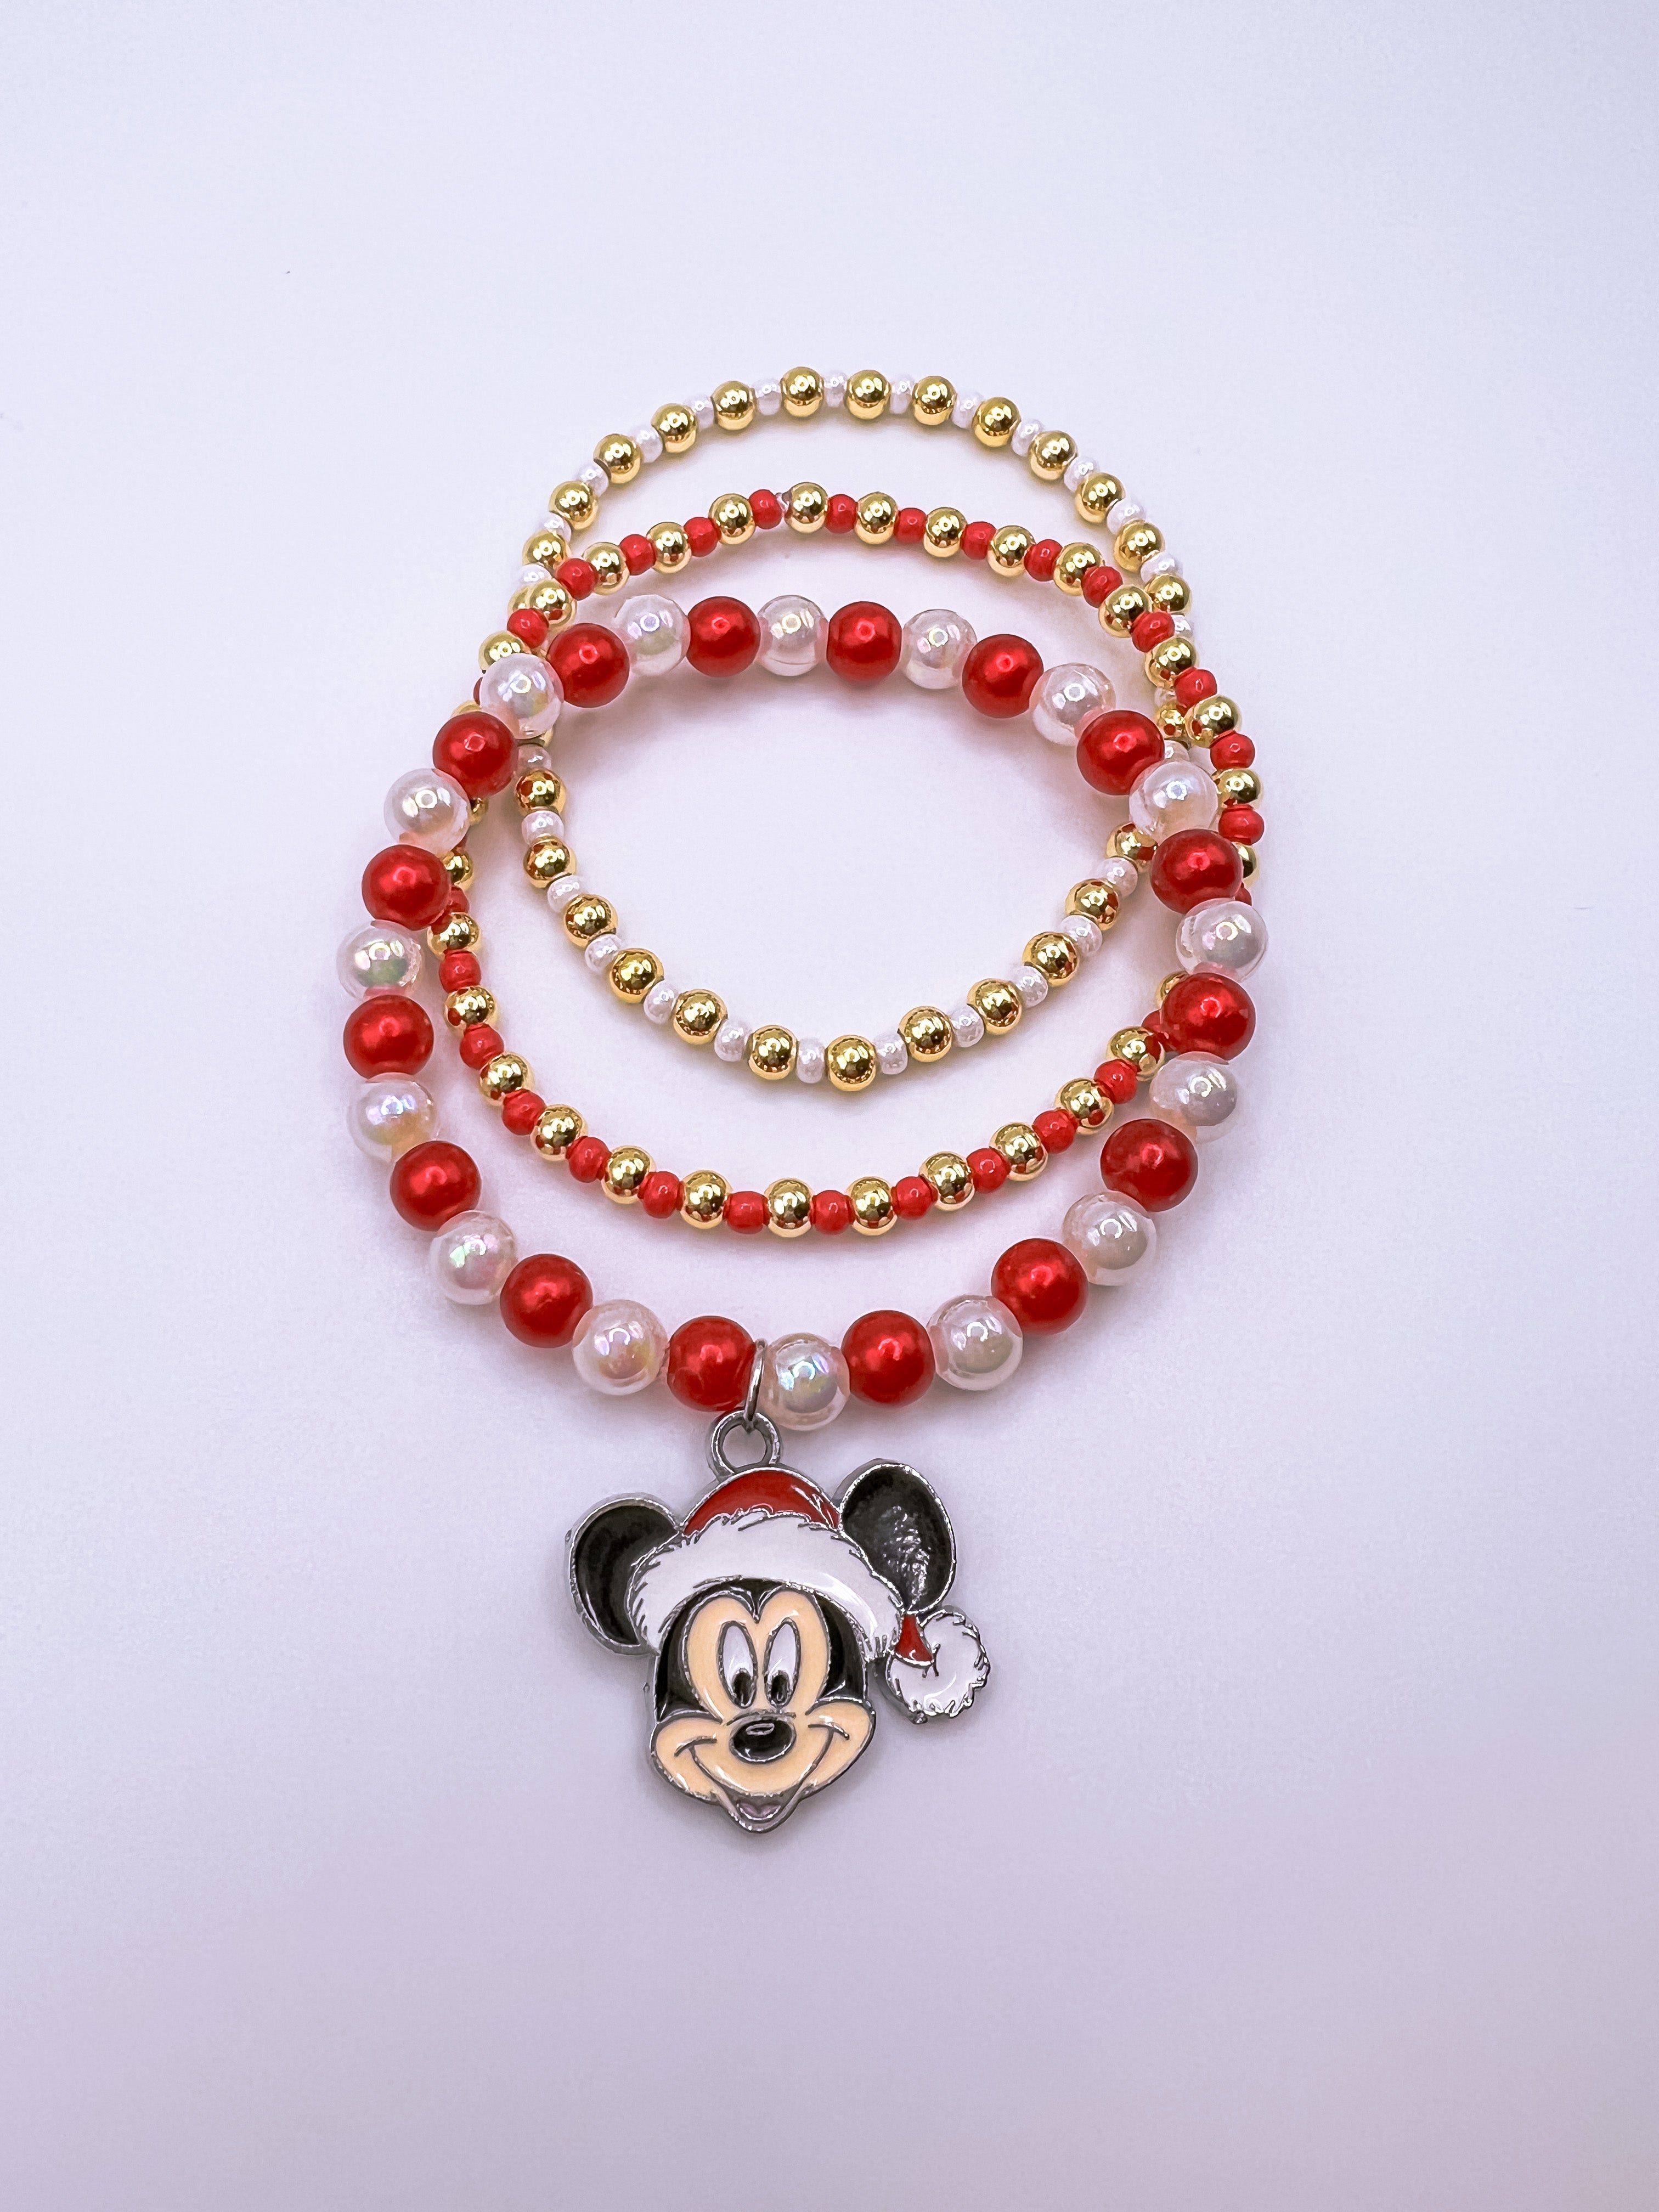 Jewellery Accessories for Kids. Necklace Bracelet for Girl. Birthday Door  Gift.